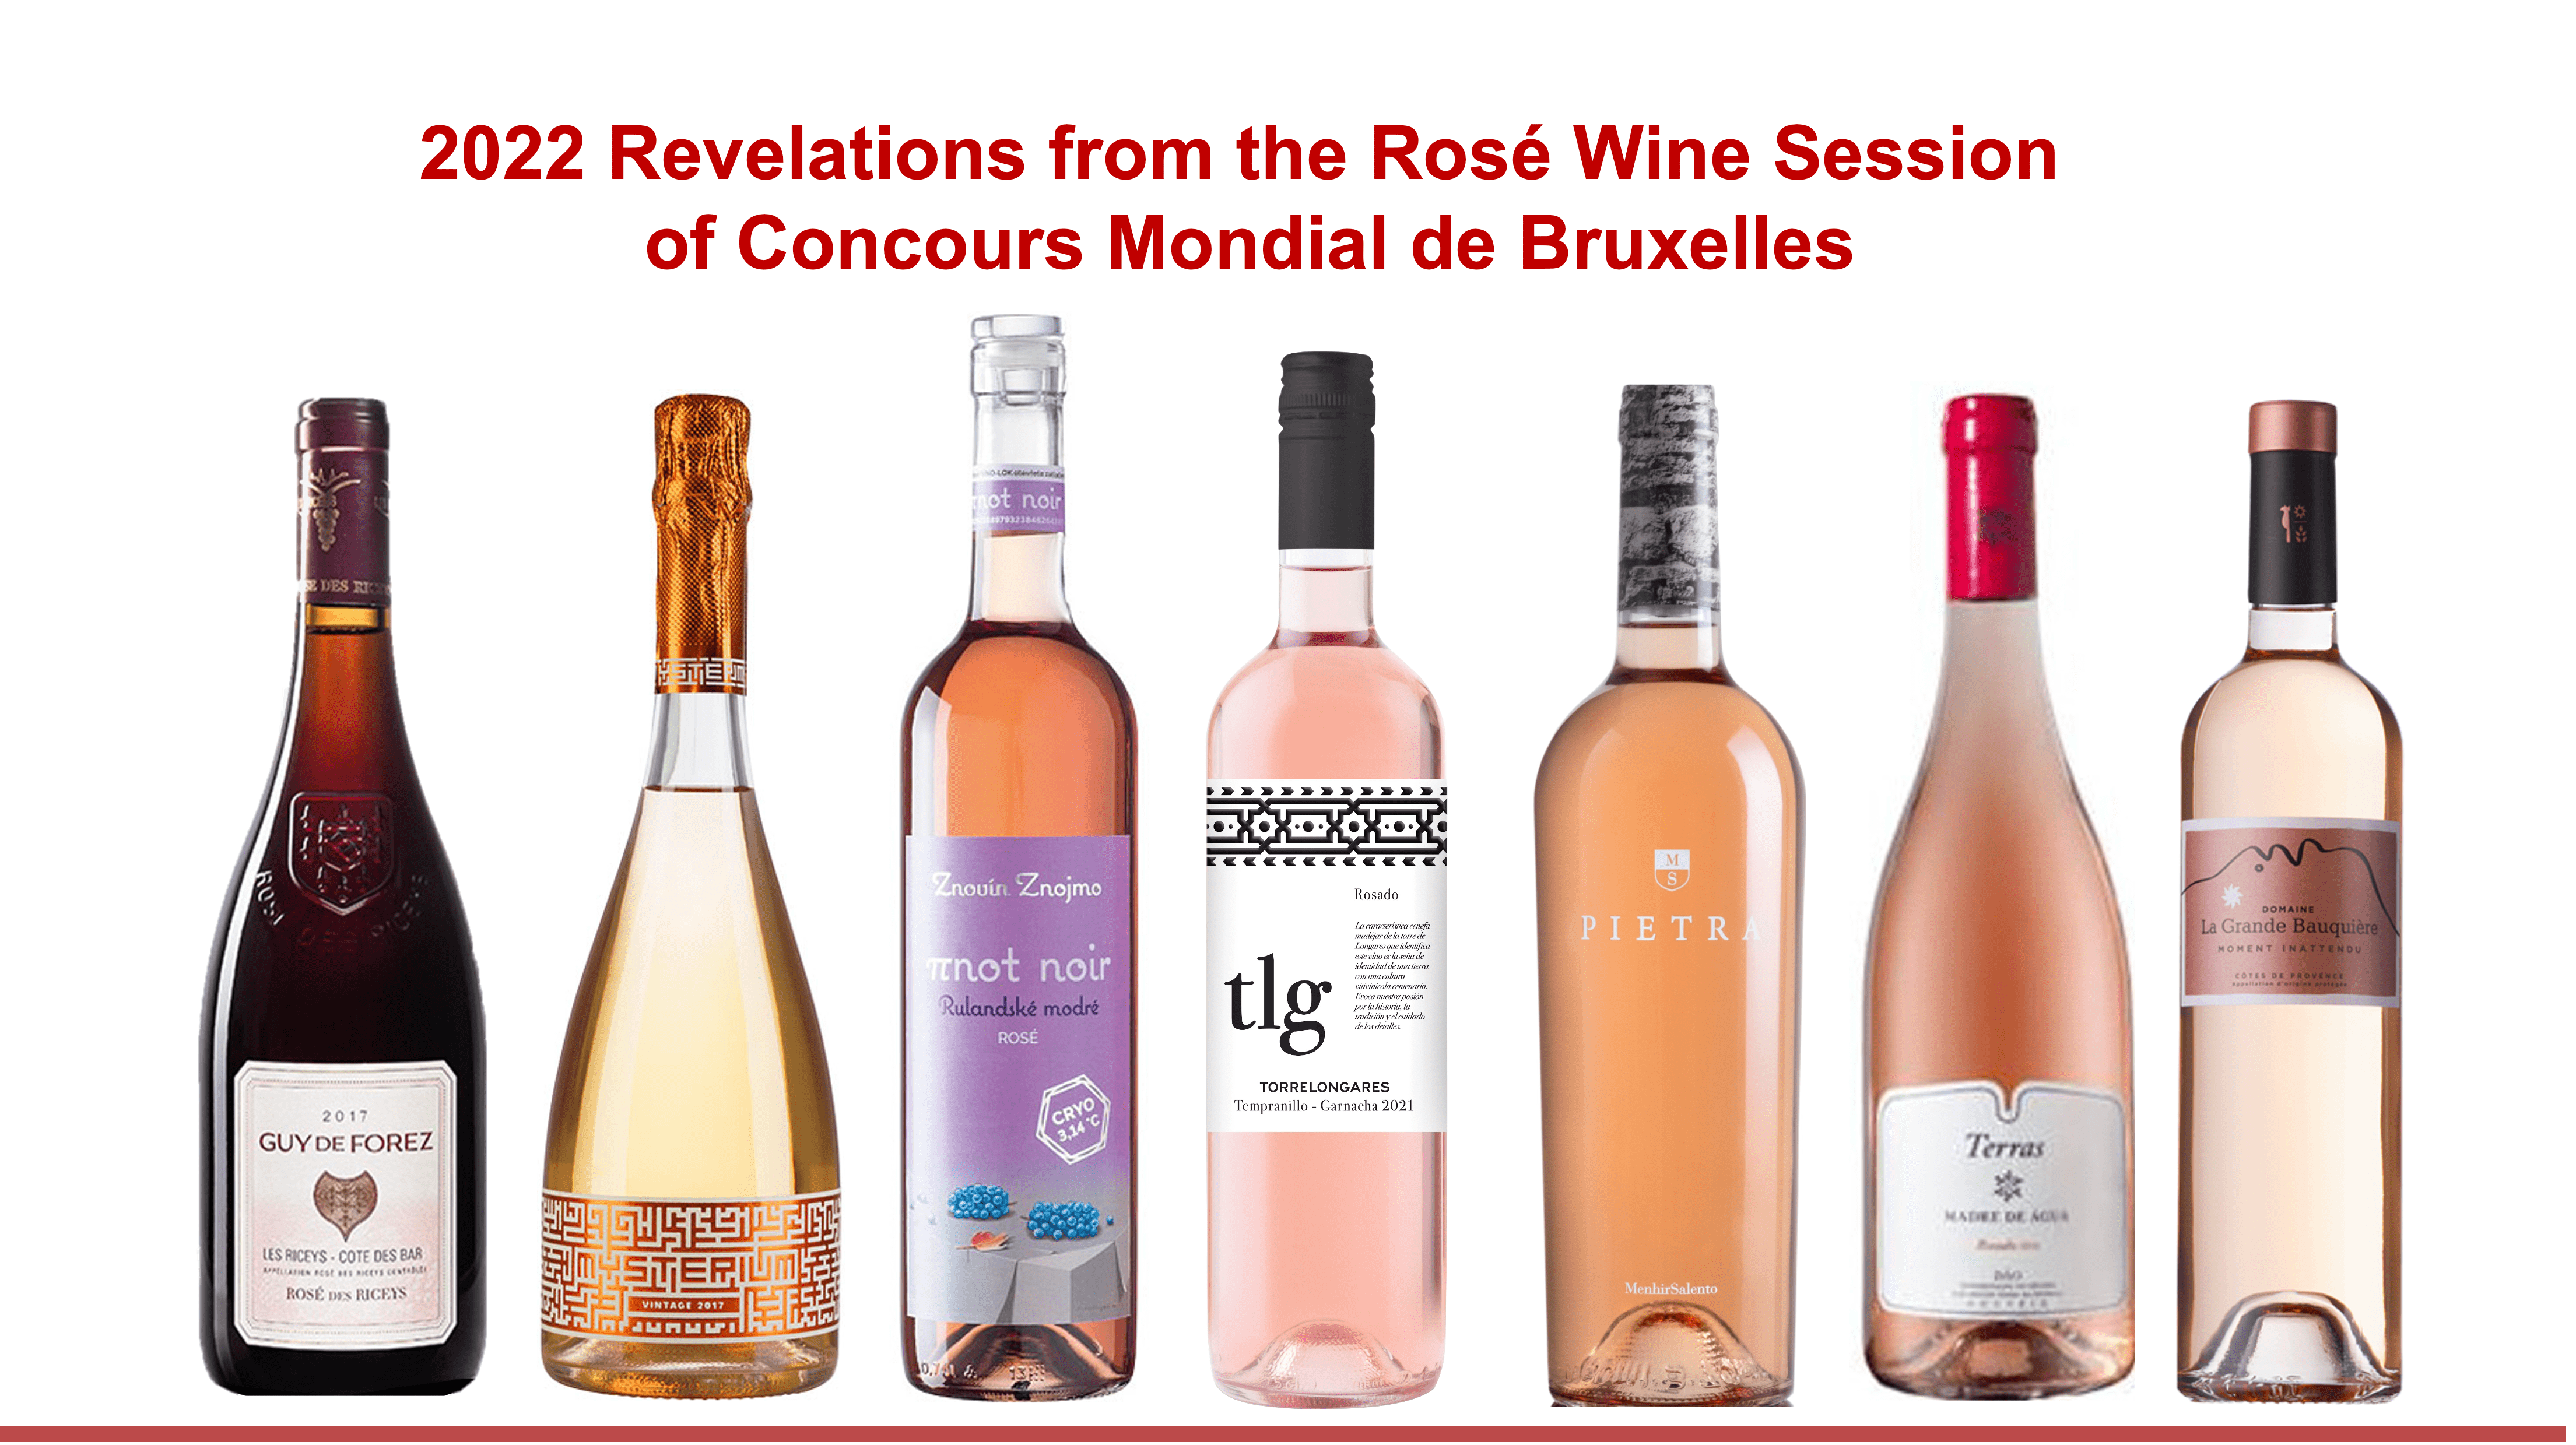 Cigales es la denominación de origen española más premiada en la Cata de Vinos Rosados del Concours Mondial de Bruxelles